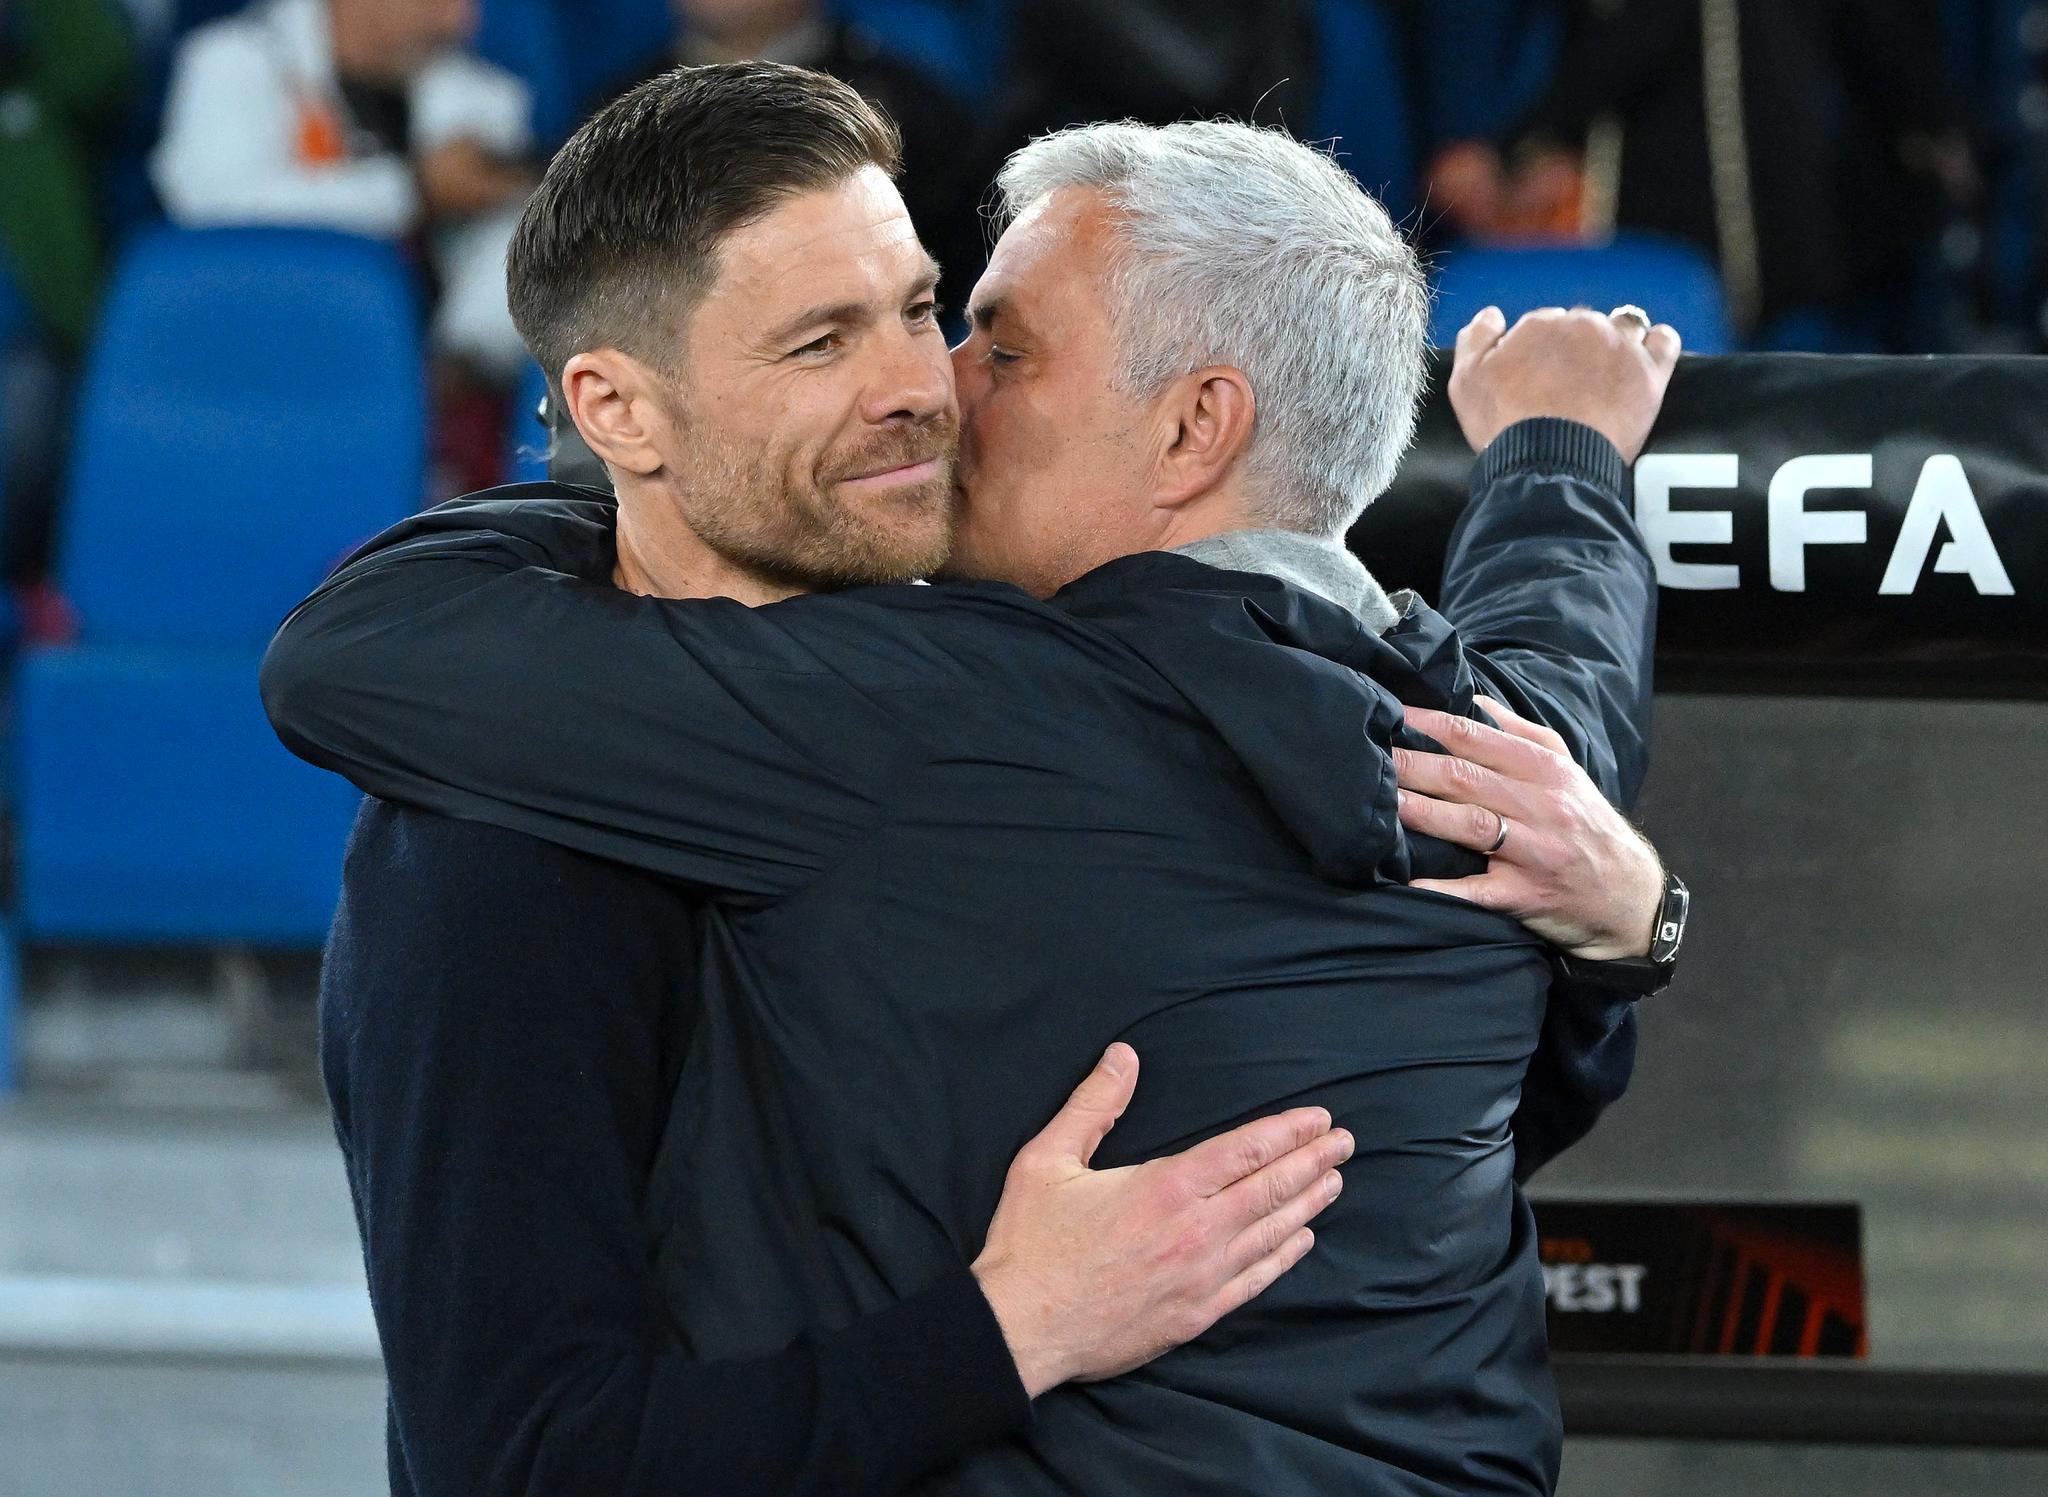 KOSELIG: Bayer Leverkusens manager Xabi Alonso og Roma-manager José Mourinho ønsket hverandre lykke til med kampen før avspark. 